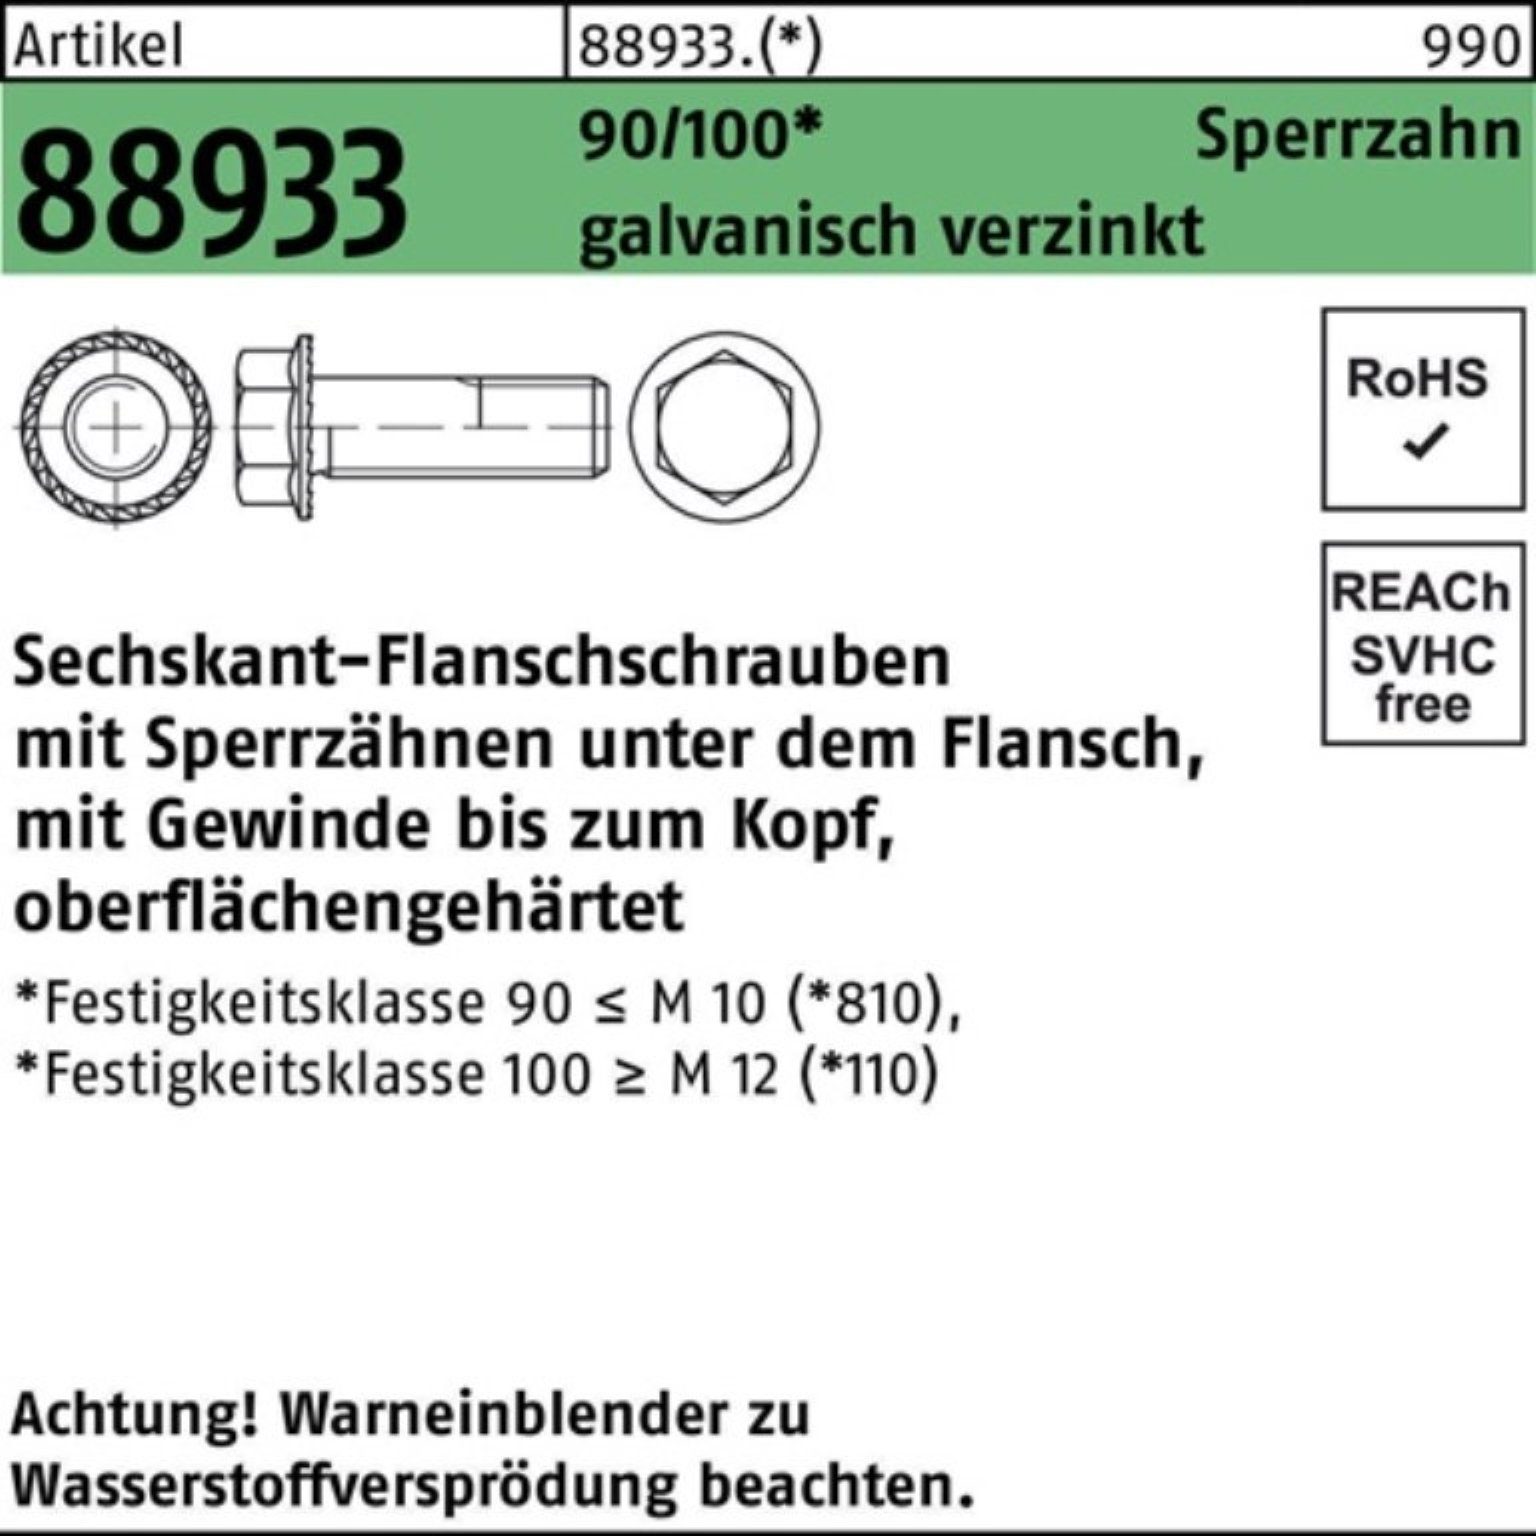 Reyher Schraube 200er Pack Sechskantflanschschraube R 88933 Sperrz. VG M8x16 90/100 ga